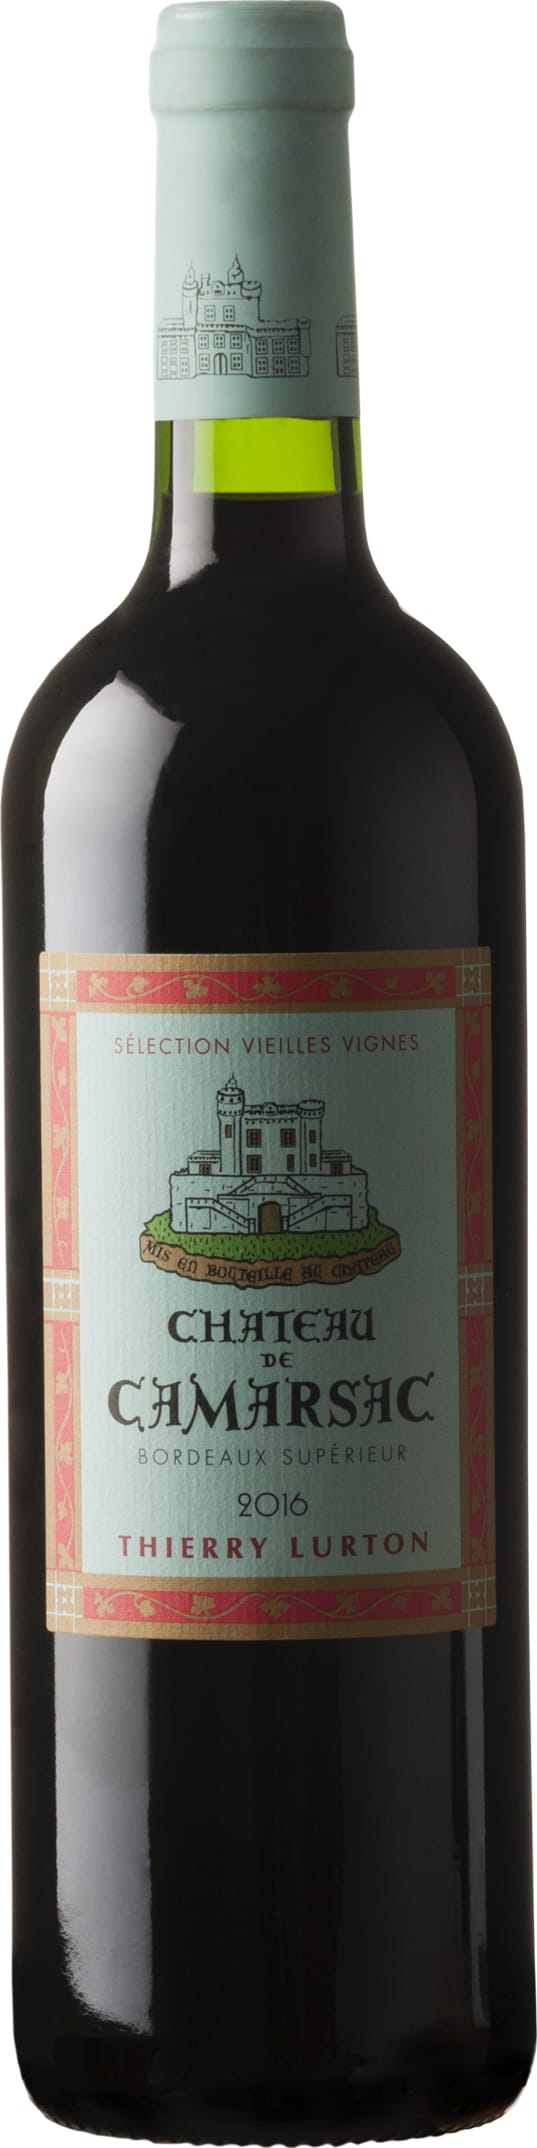 Chateau Camarsac Vieilles Vignes, Bordeaux Superieur 2019 6x75cl - Just Wines 